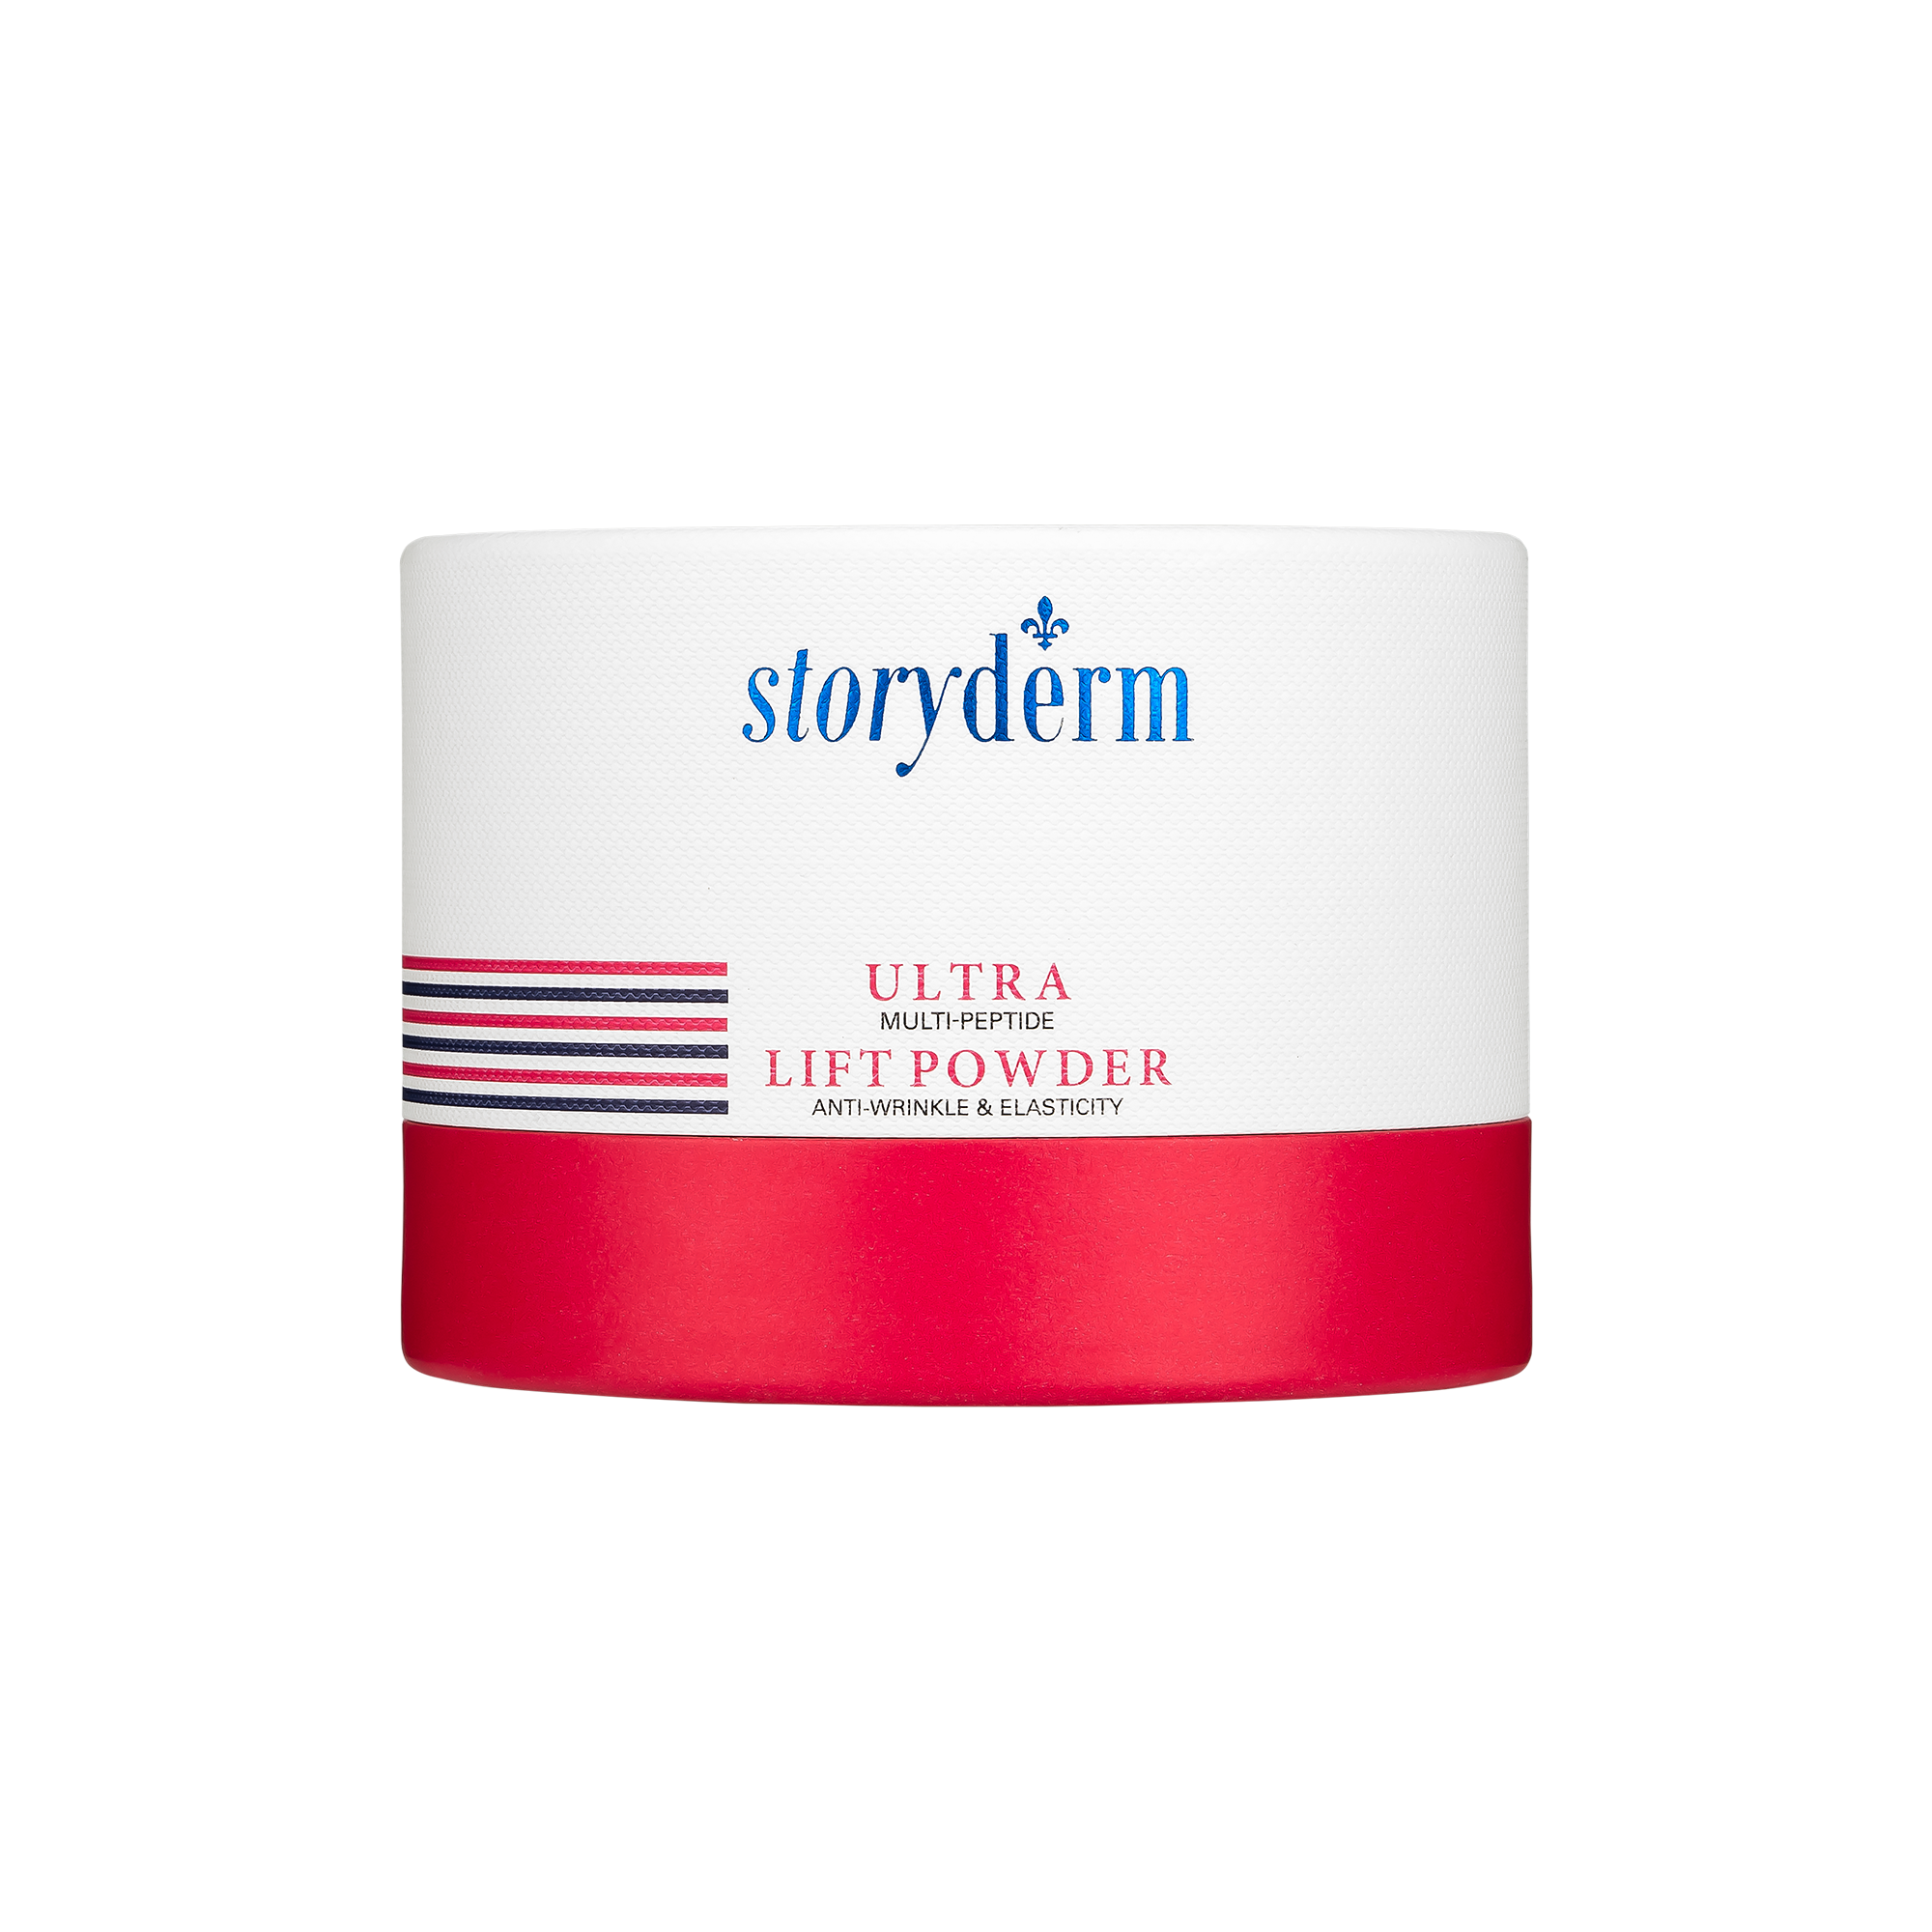 Набор масок с лифтинг эффектом Storyderm Ultra Lift Powder, 4 шт по 1,5г лицо кинезиология лента красота подтяжка морщины редуктор лента рулон фиолетовый